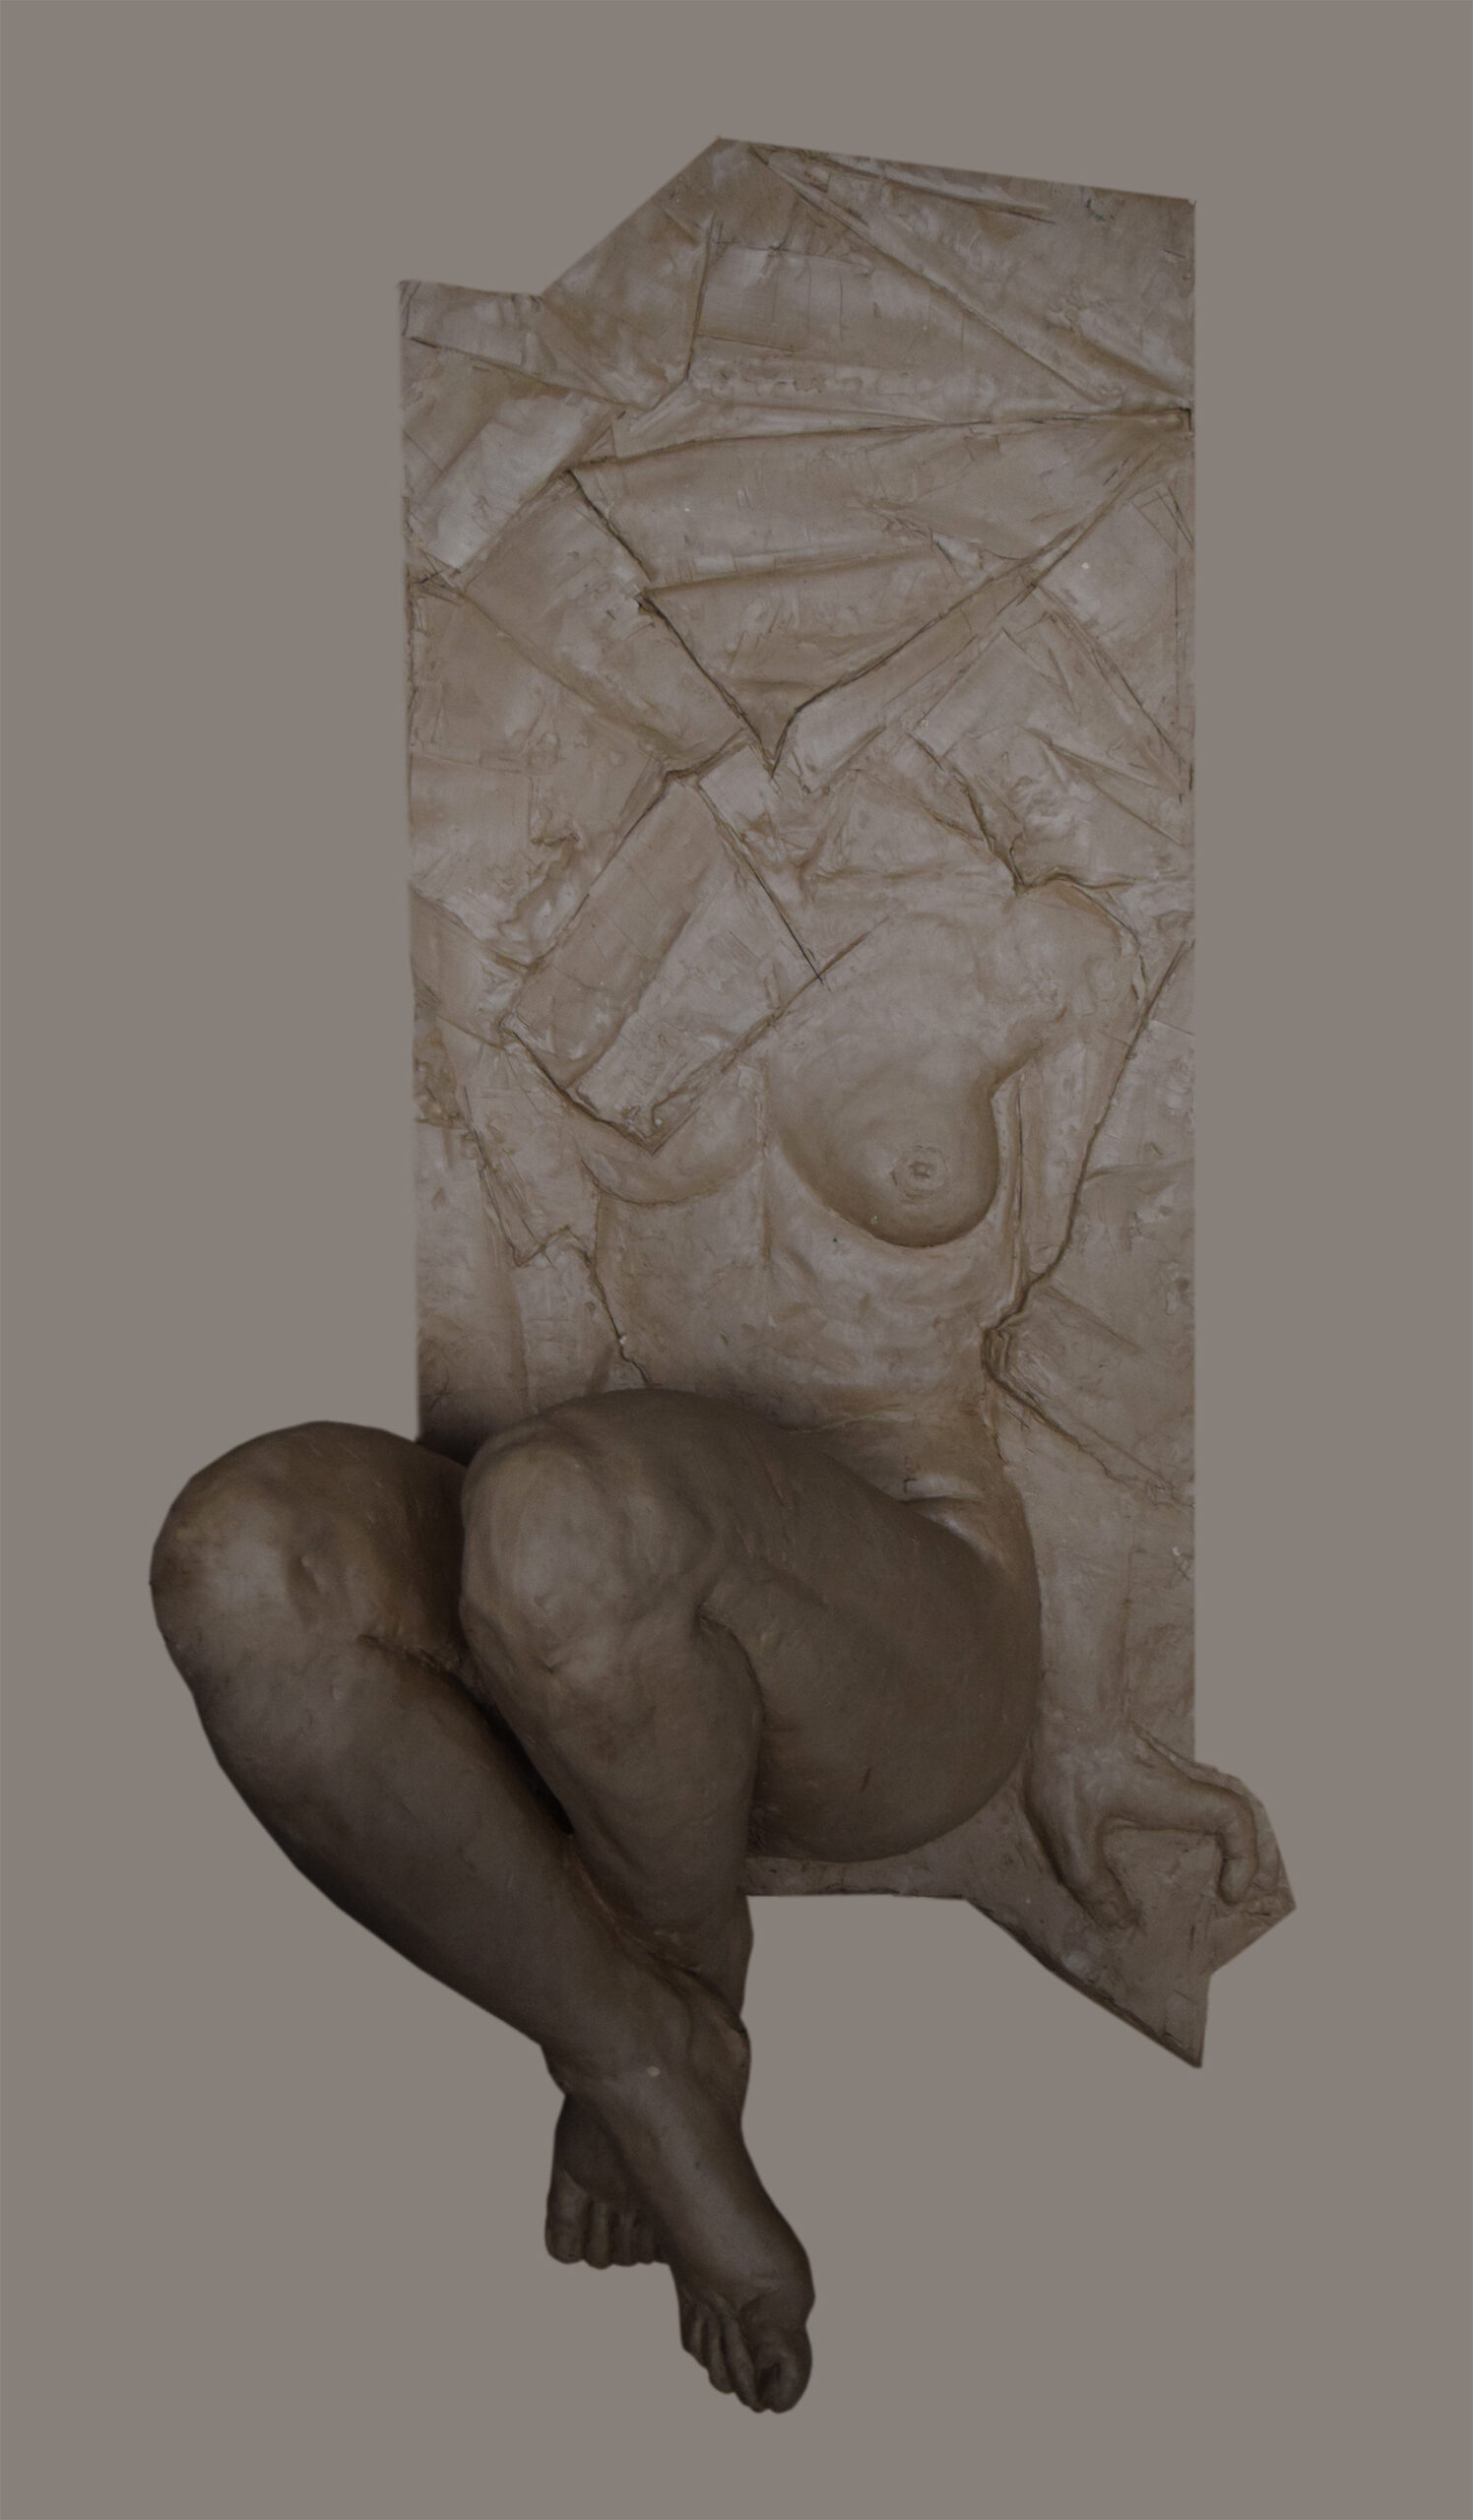 Realistyczna rzeźba wykonana w glinie przedstawiająca nagą postać kobiecą ze skrzyżowanymi nogami. Forma składa się z części płaskorzeźby (górnej) i trójwymiarowej (dolnej).  W części górnej głowa i lewa pierś są zasłonięte formami imitującymi zgięty papier, prawa pierś i brzuch są odsłonięte. Od bioder w dół forma przechodzi w trójwymiarową rzeźbę,